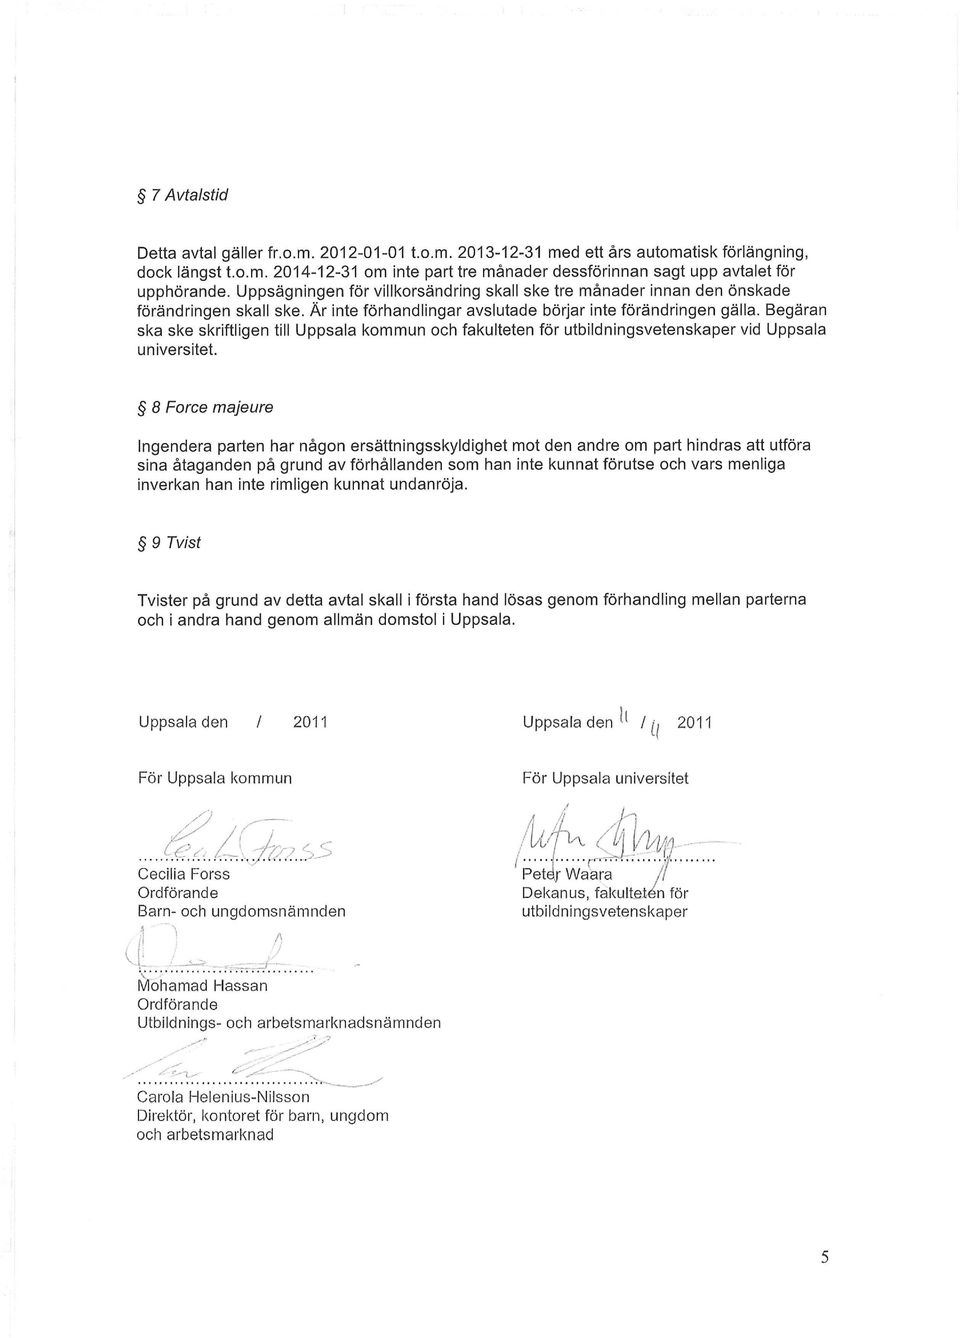 Begäran ska ske skriftligen till Uppsala kommun och fakulteten för utbildningsvetenskaper vid Uppsala universitet.